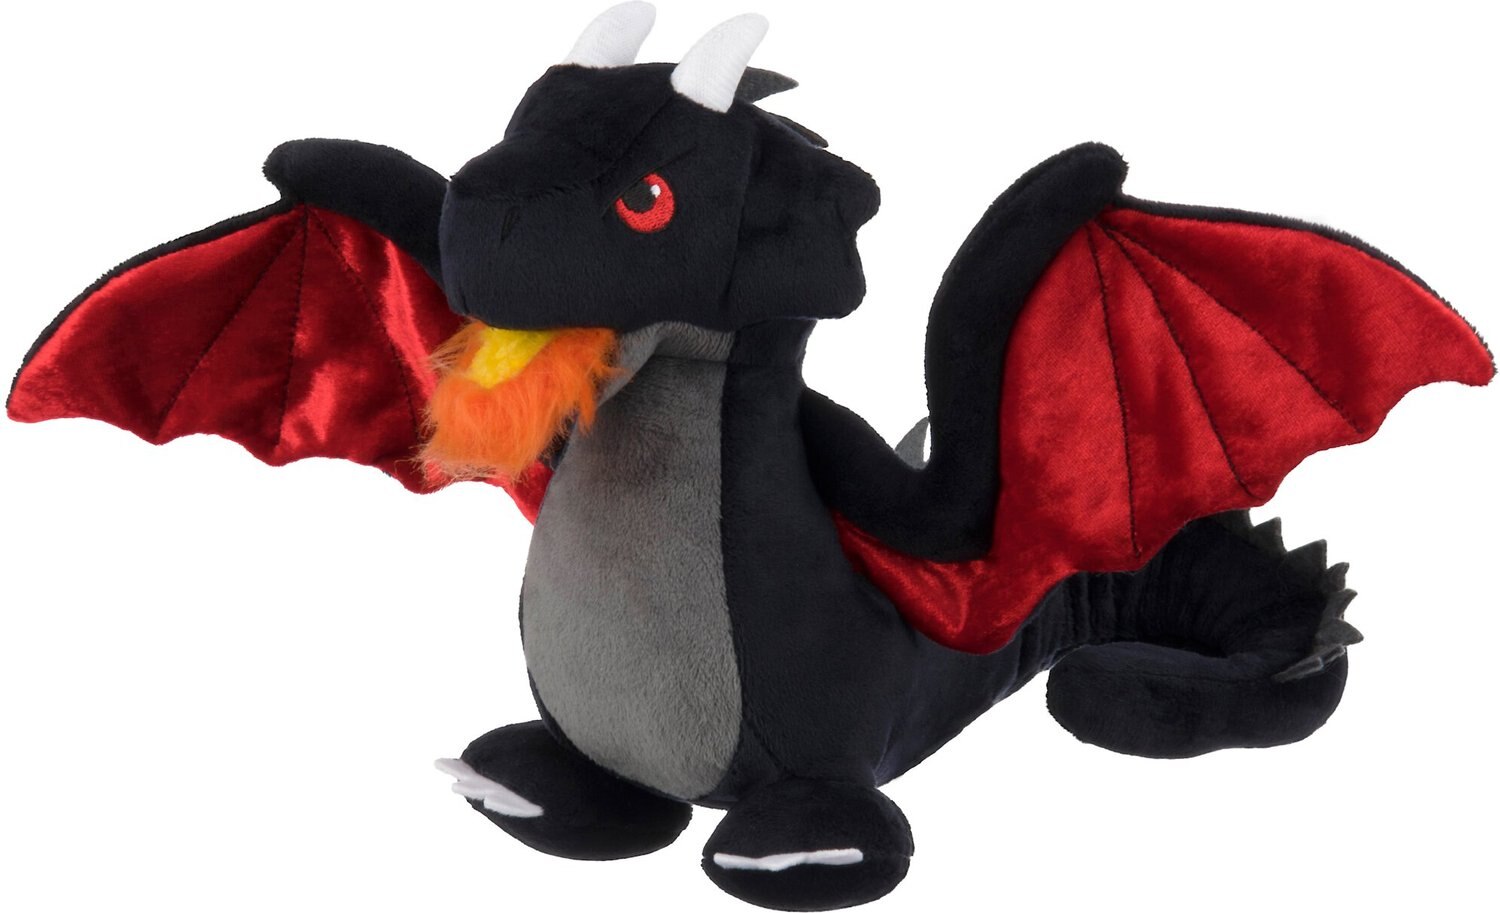 dragon plush toy